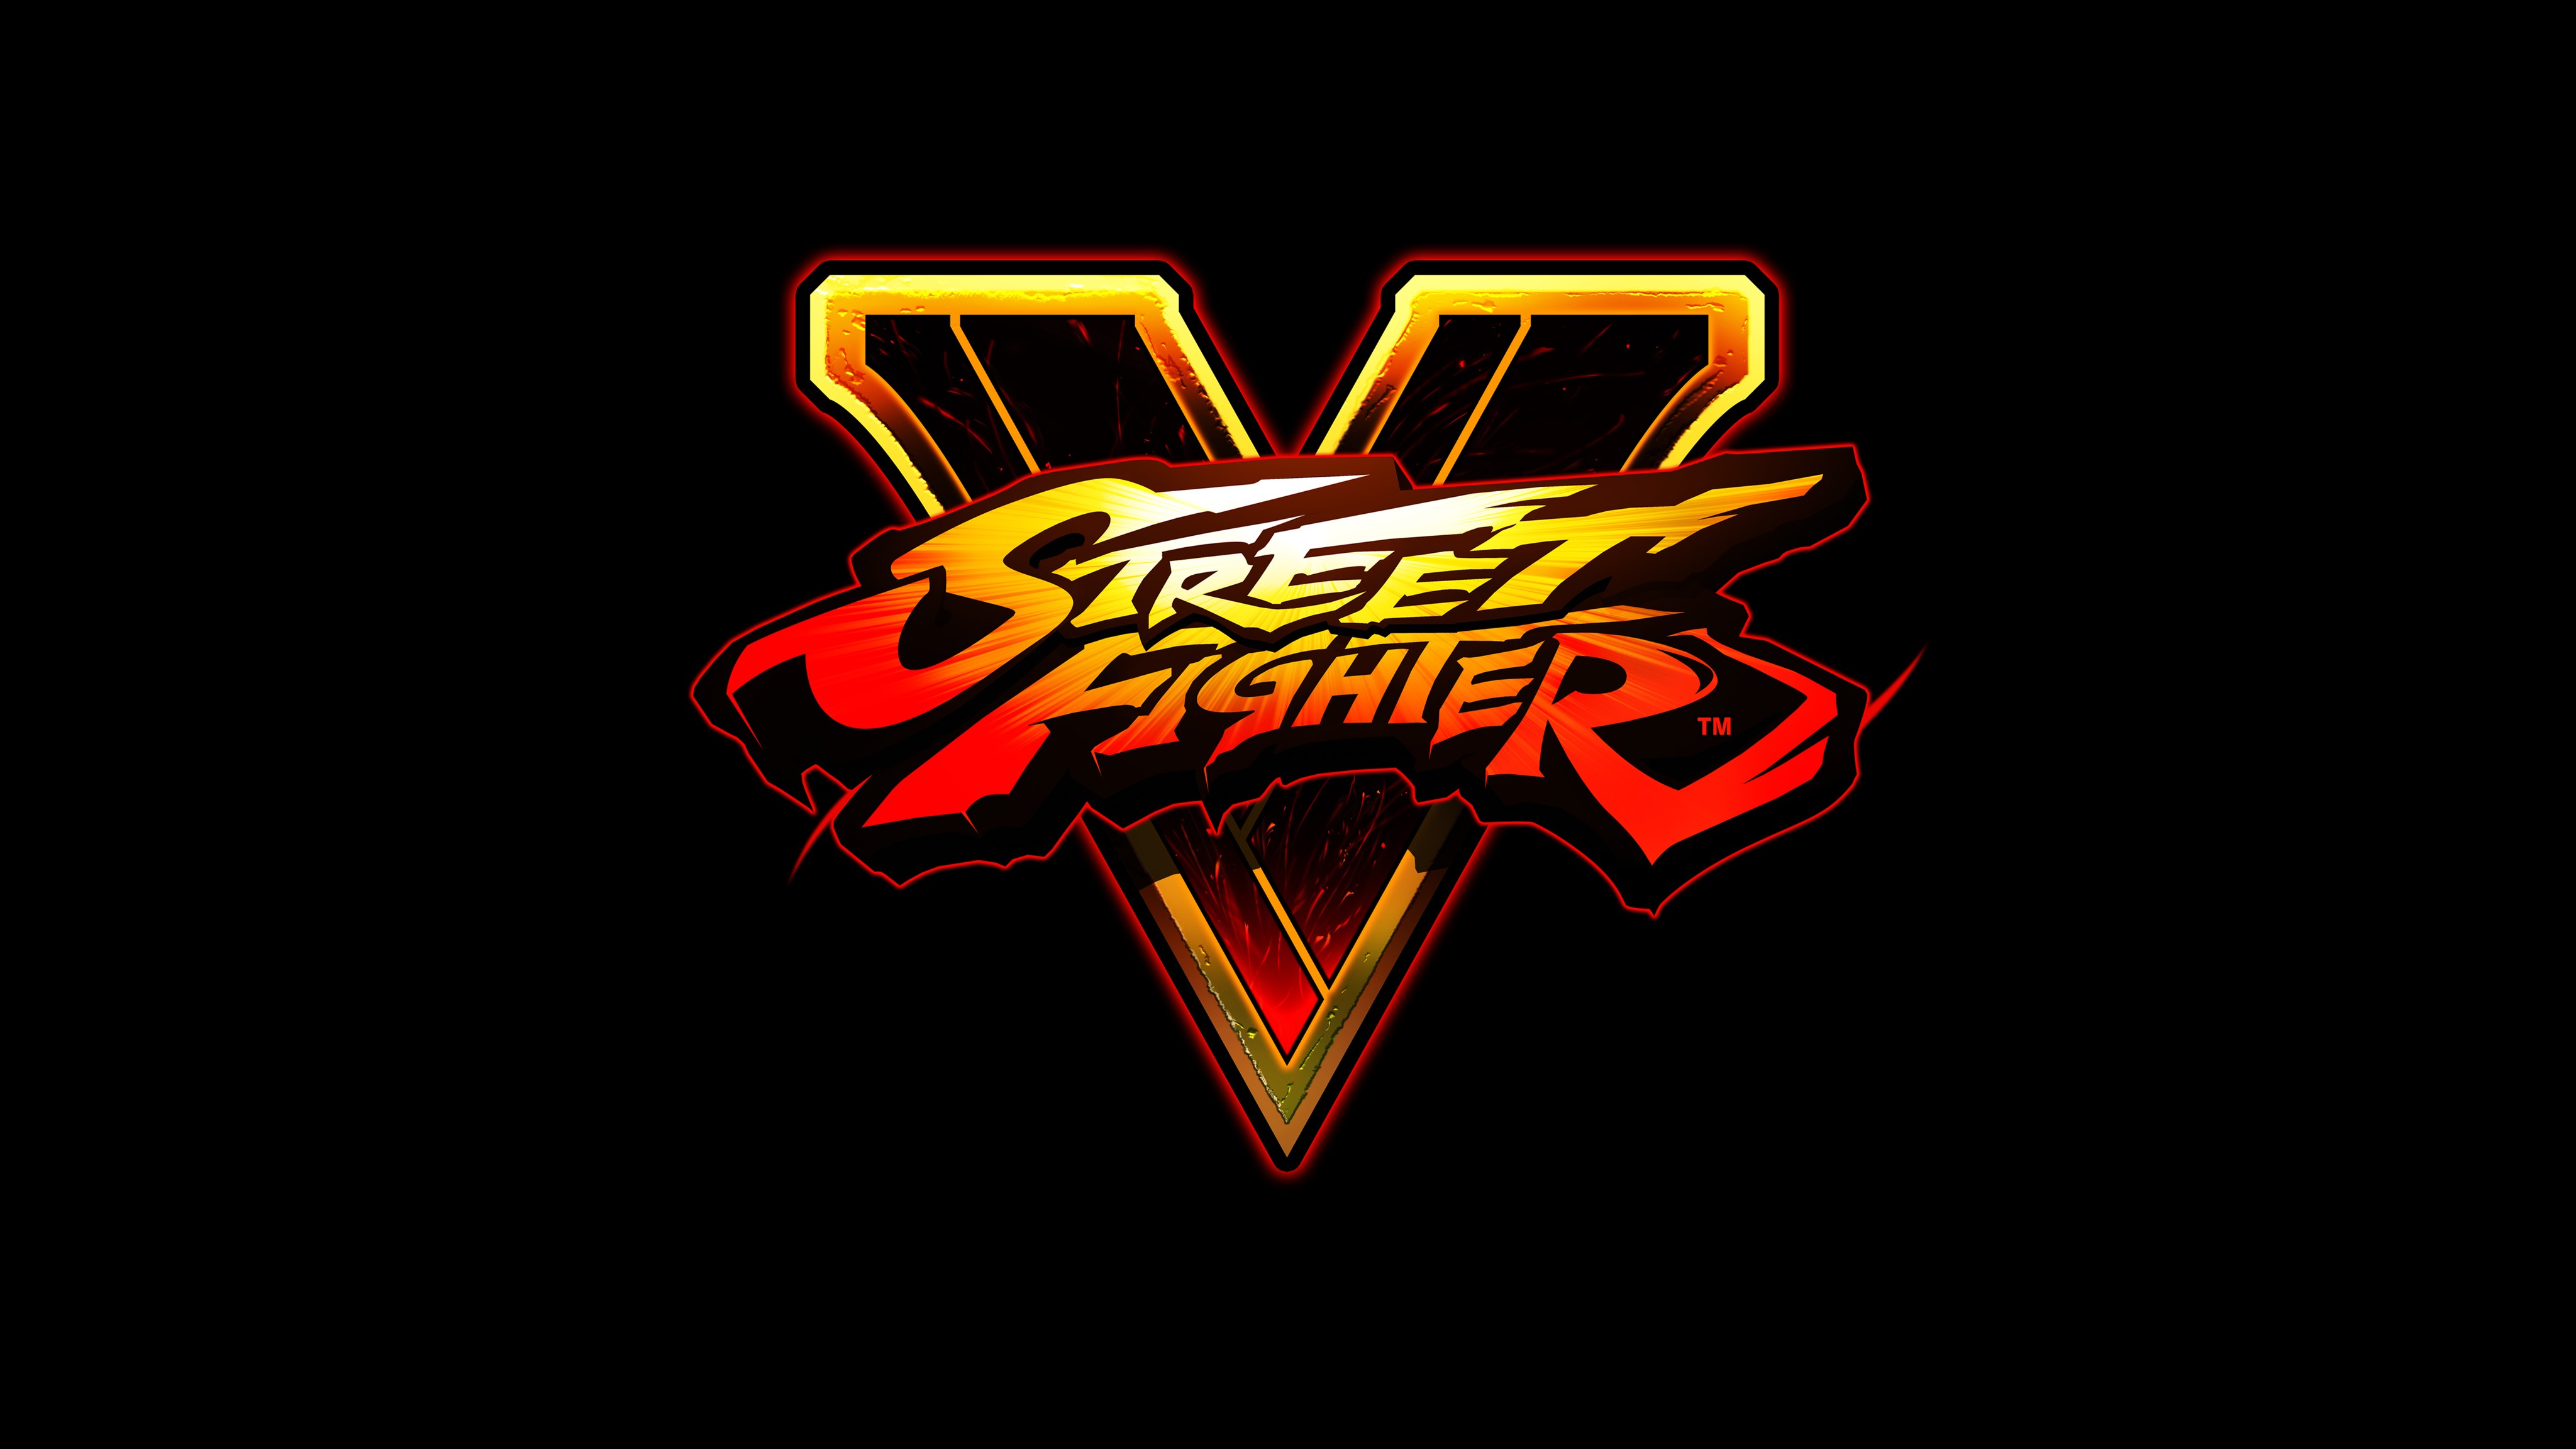 General 4096x2304 digital art video games black Street Fighter Street Fighter V logo simple background black background